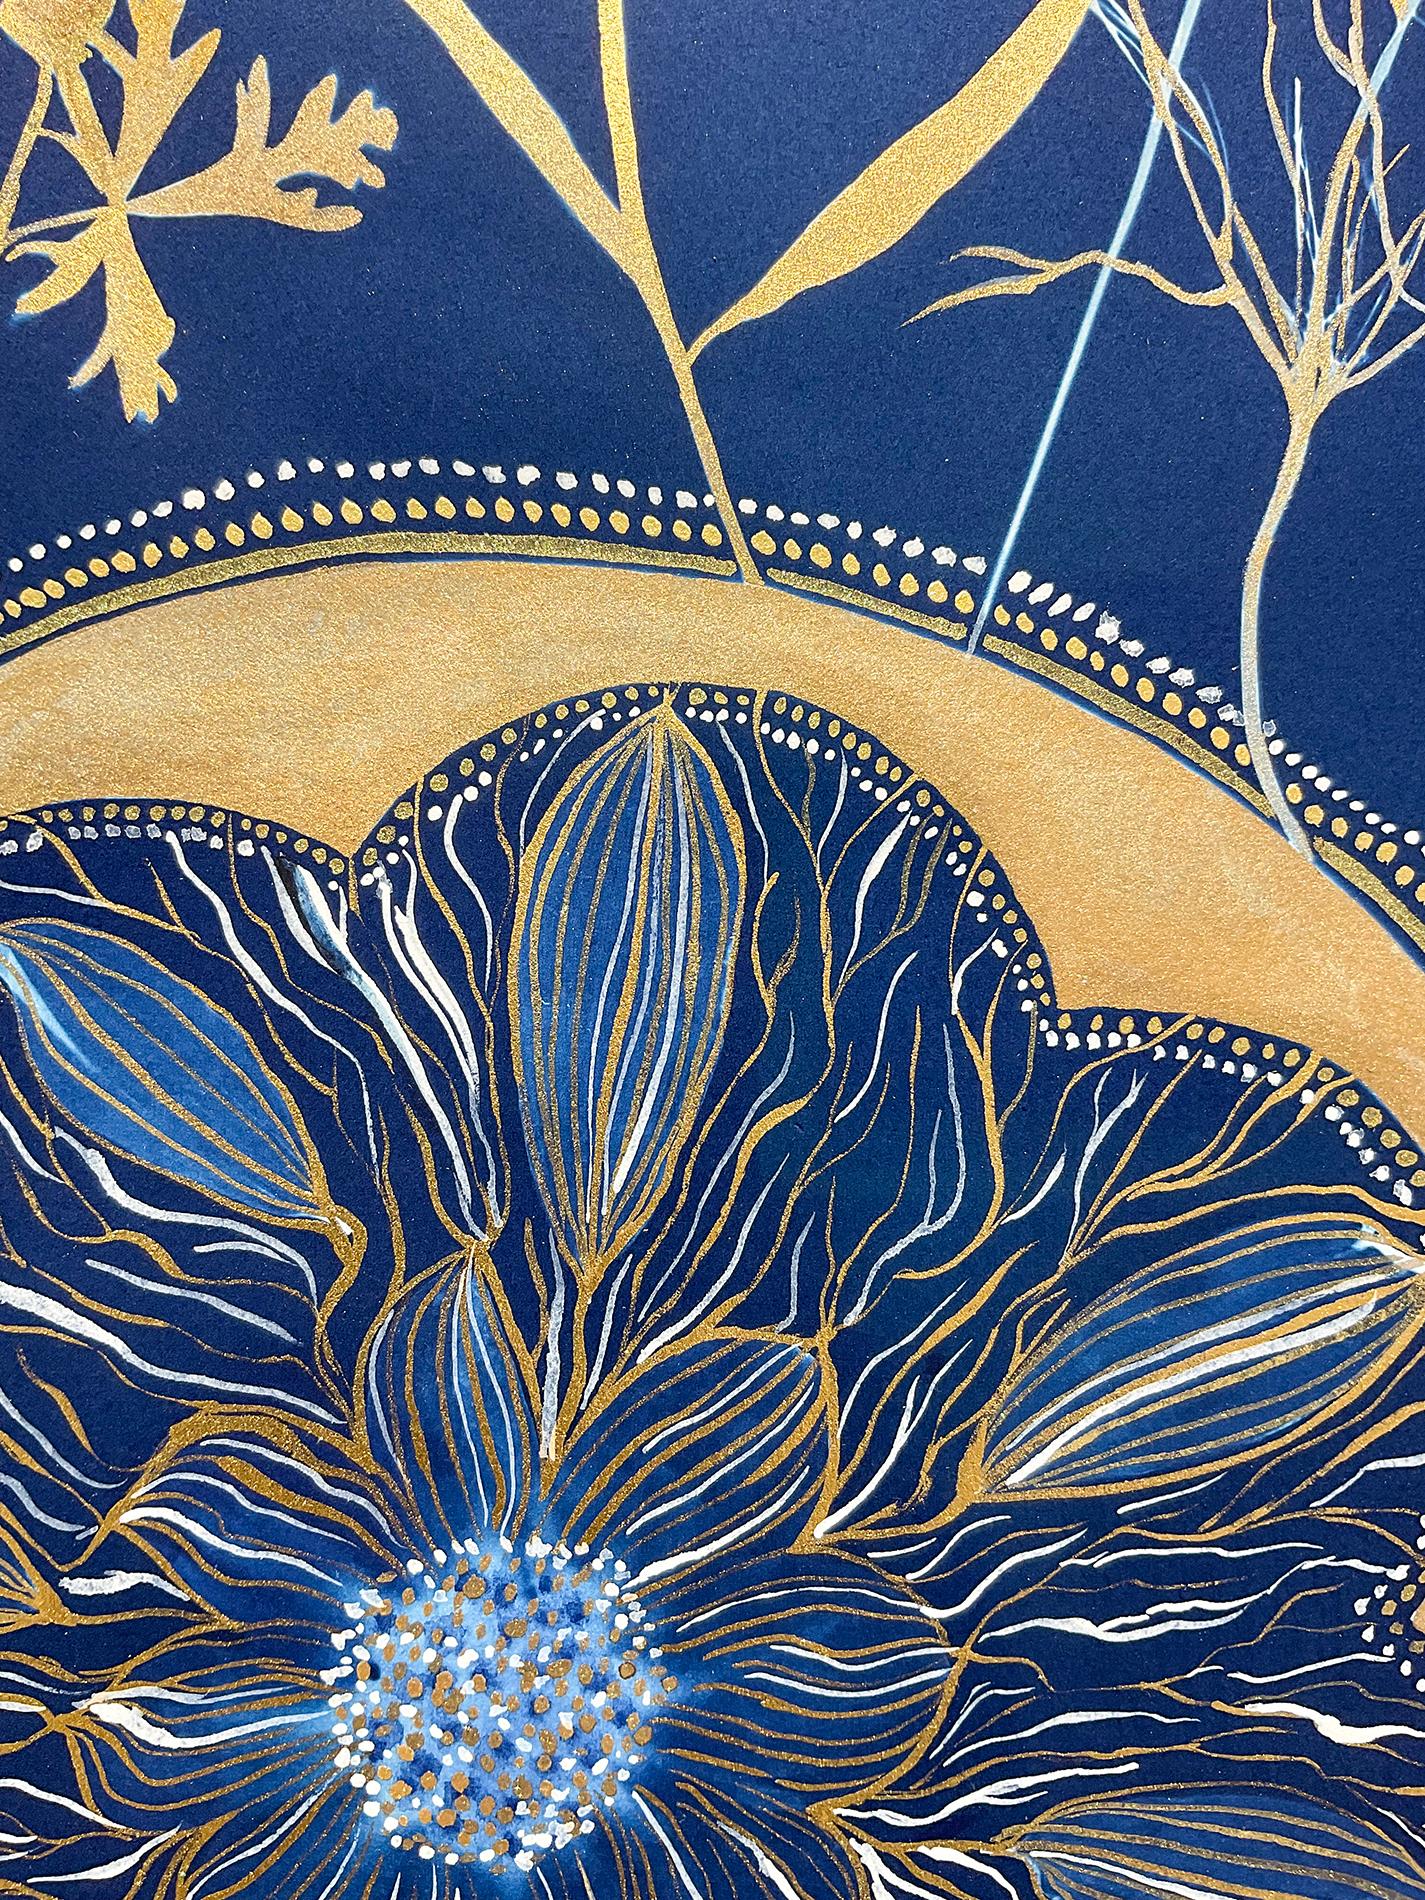 Nature morte figurative de fleurs bleu pâle et or sur fond cyanotype indigo 
